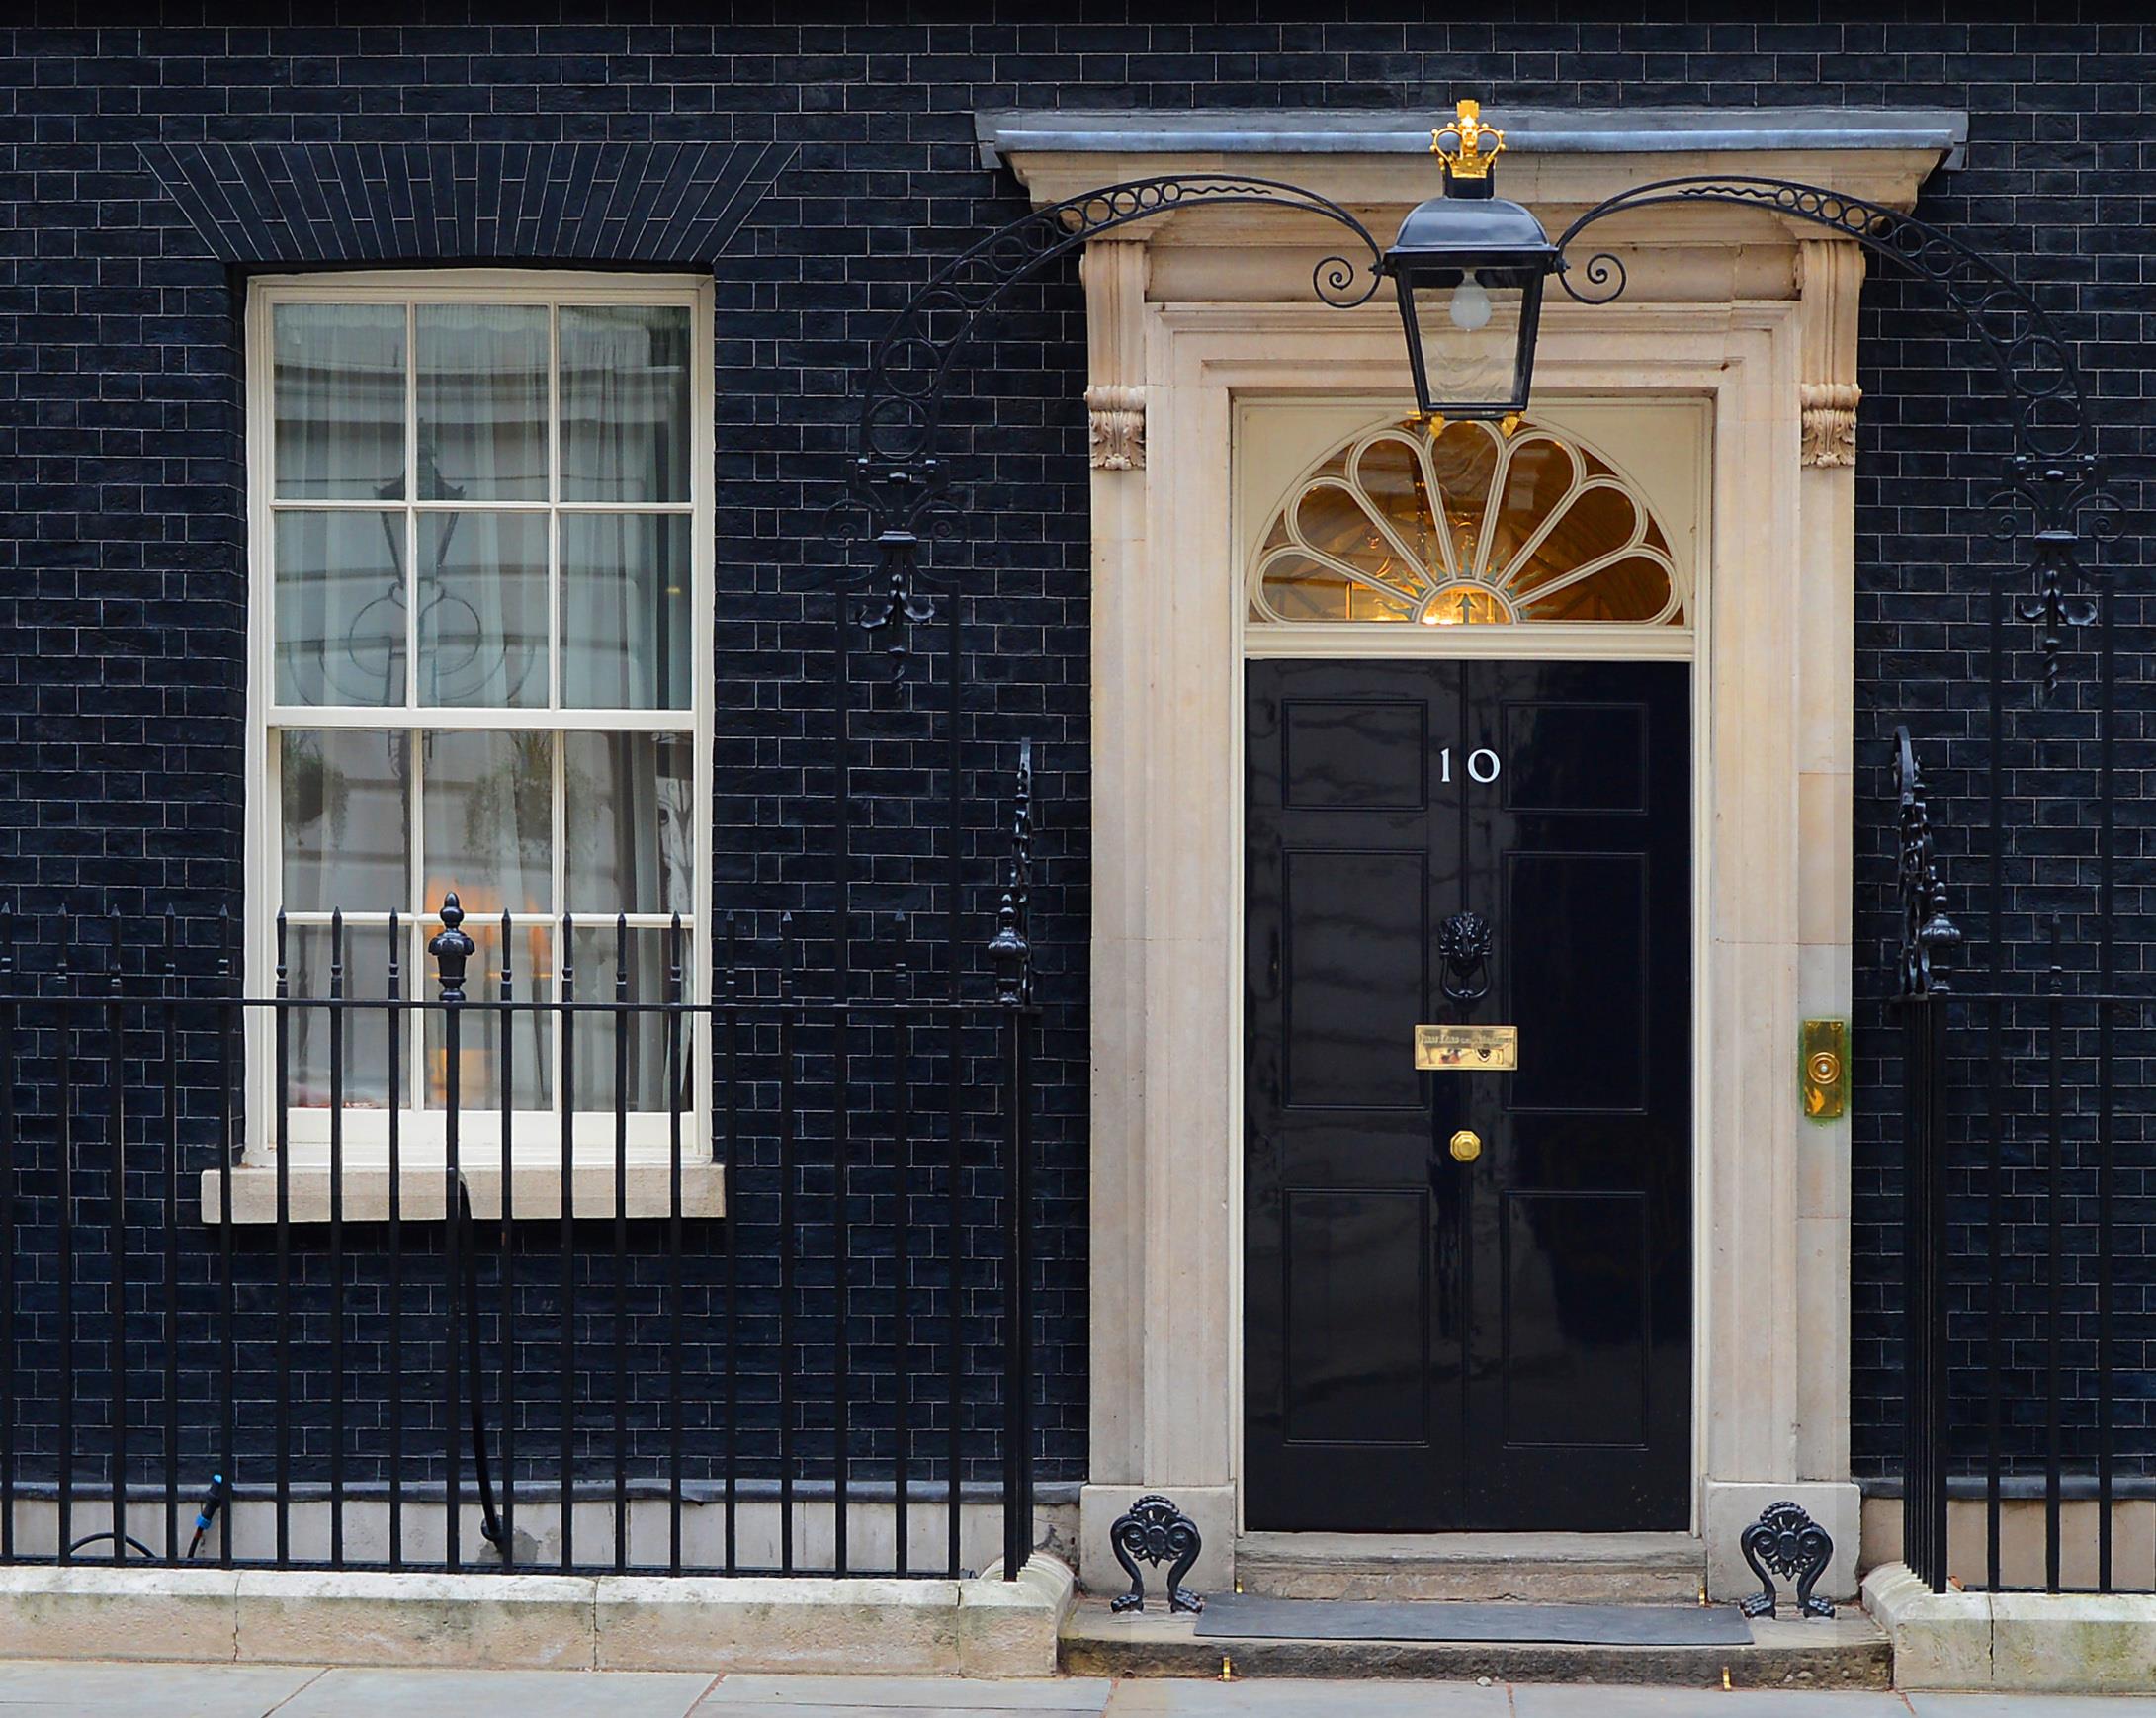 GB/Covid: ouverture d'une enquête sur les fêtes de Downing Street

